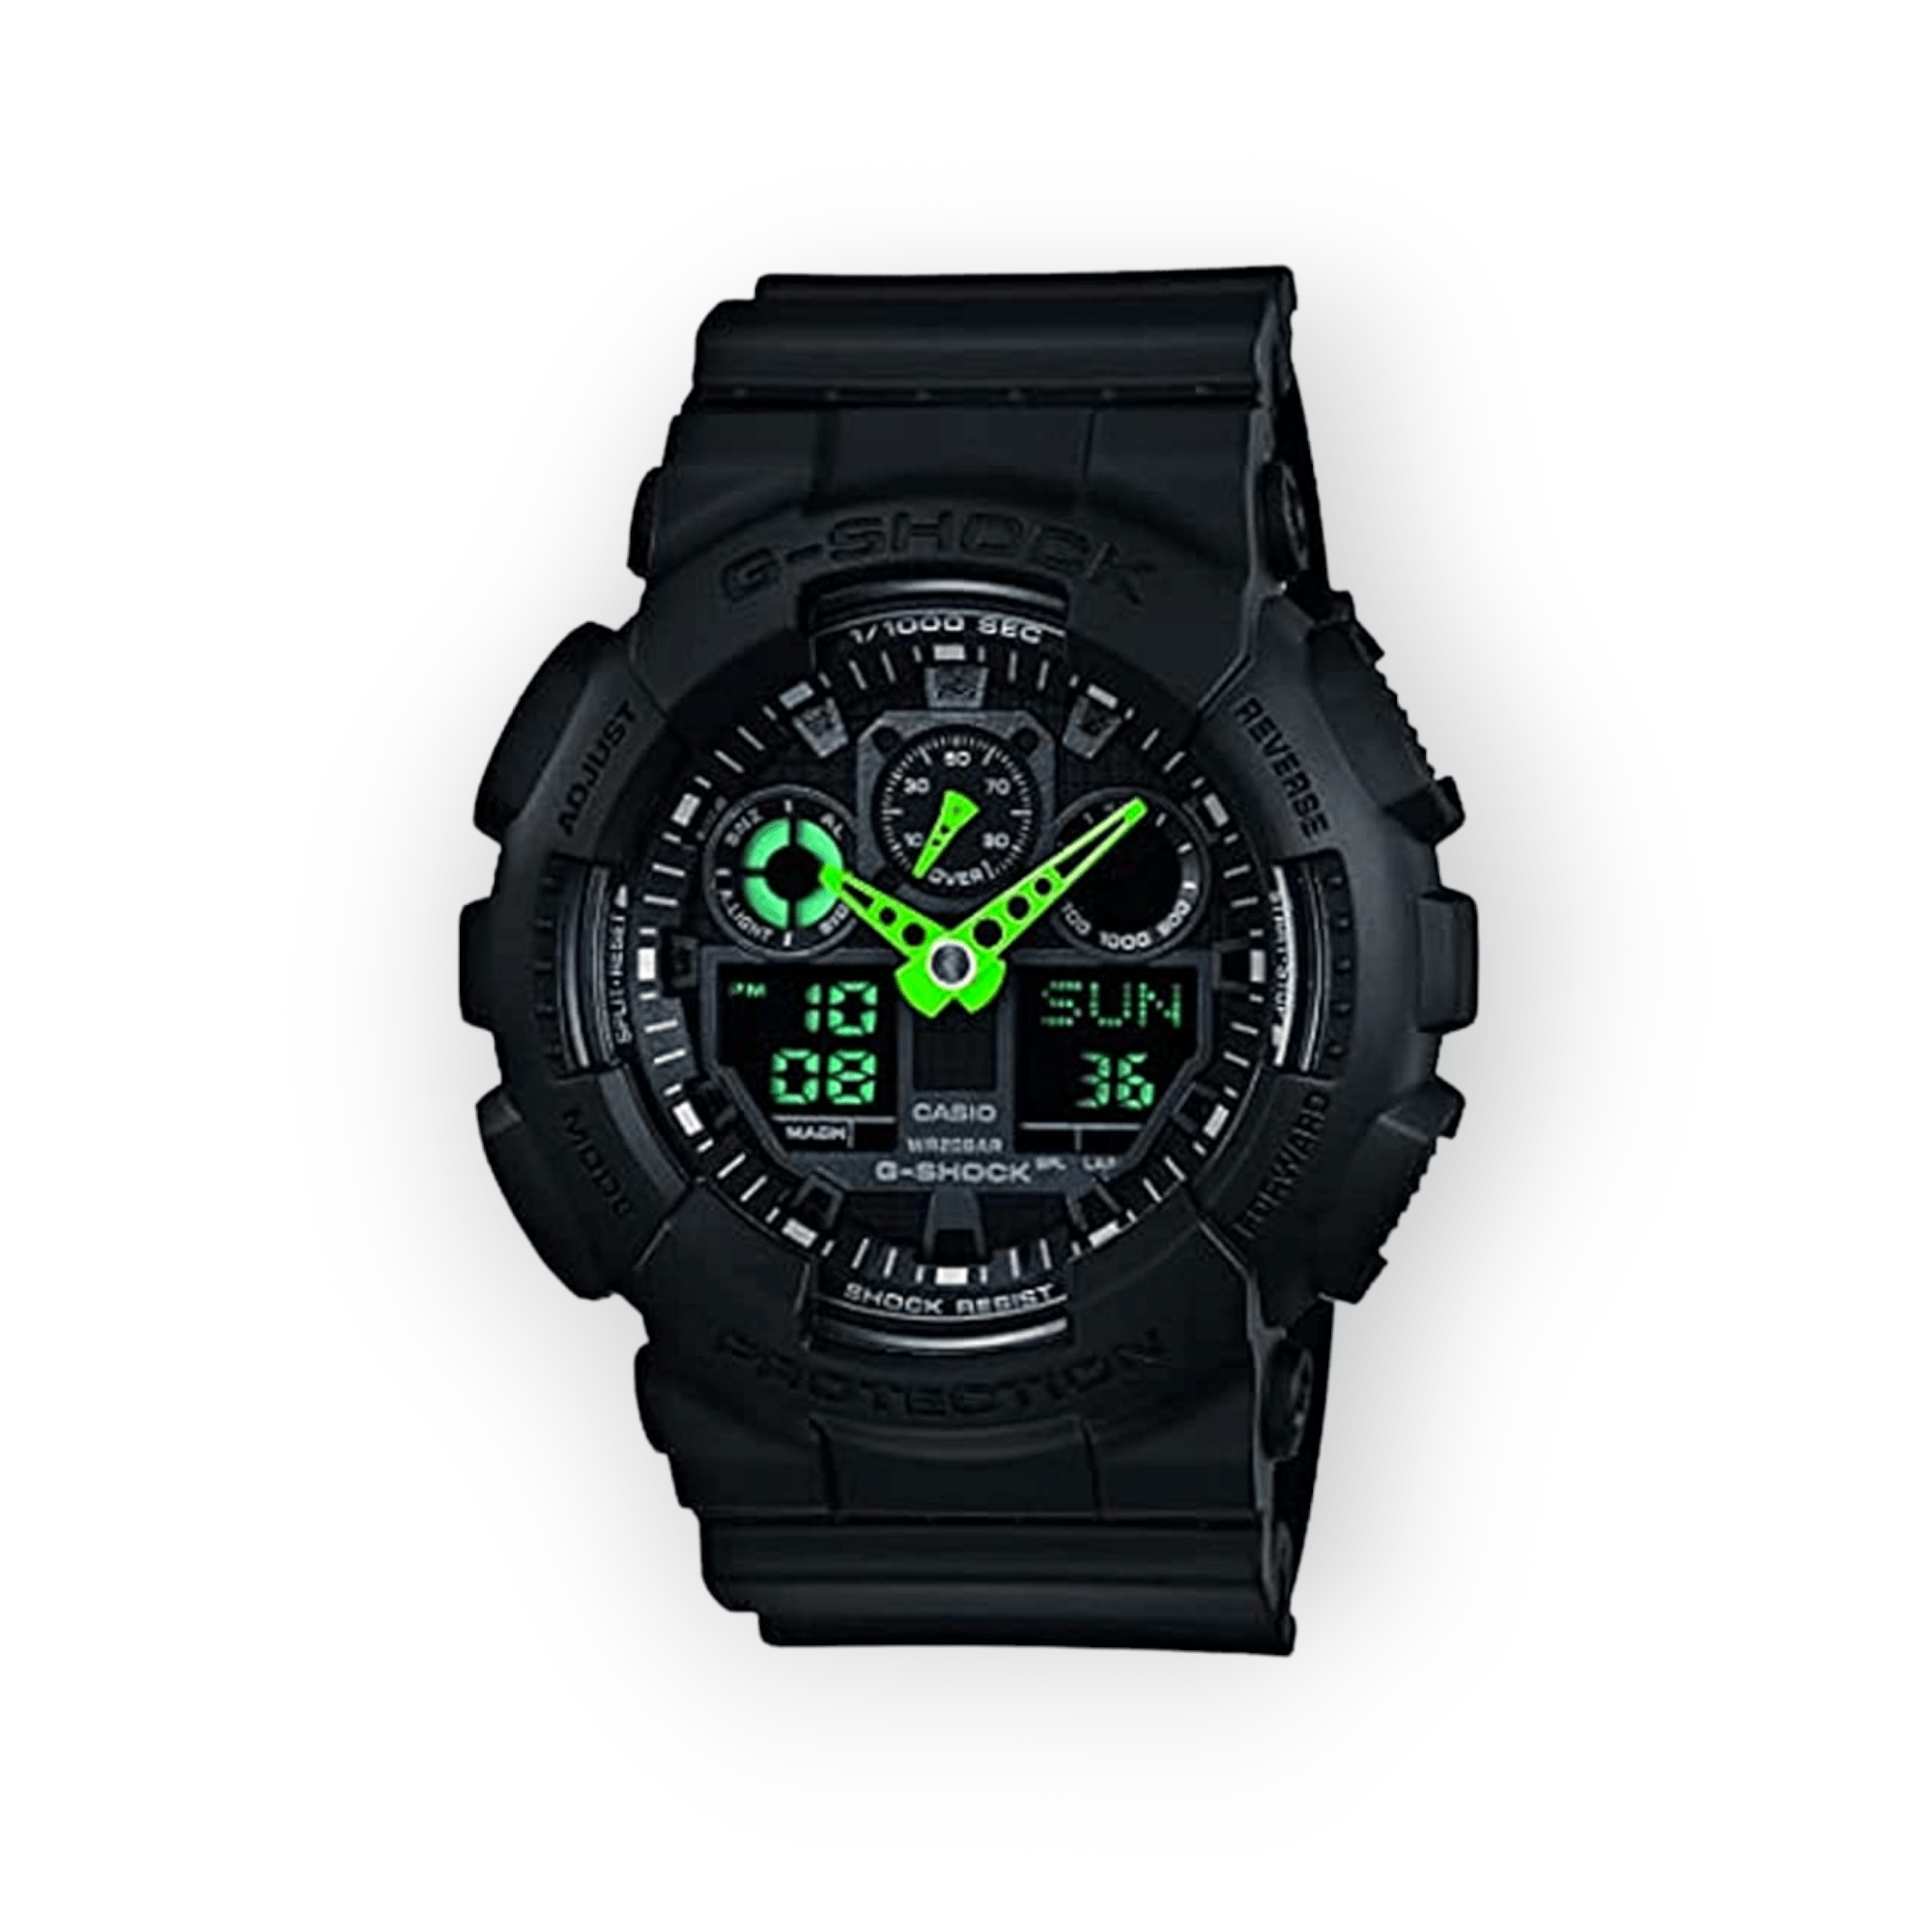 Casio Men's G-Shock Quartz Sport Watch With Resin Strap, Black